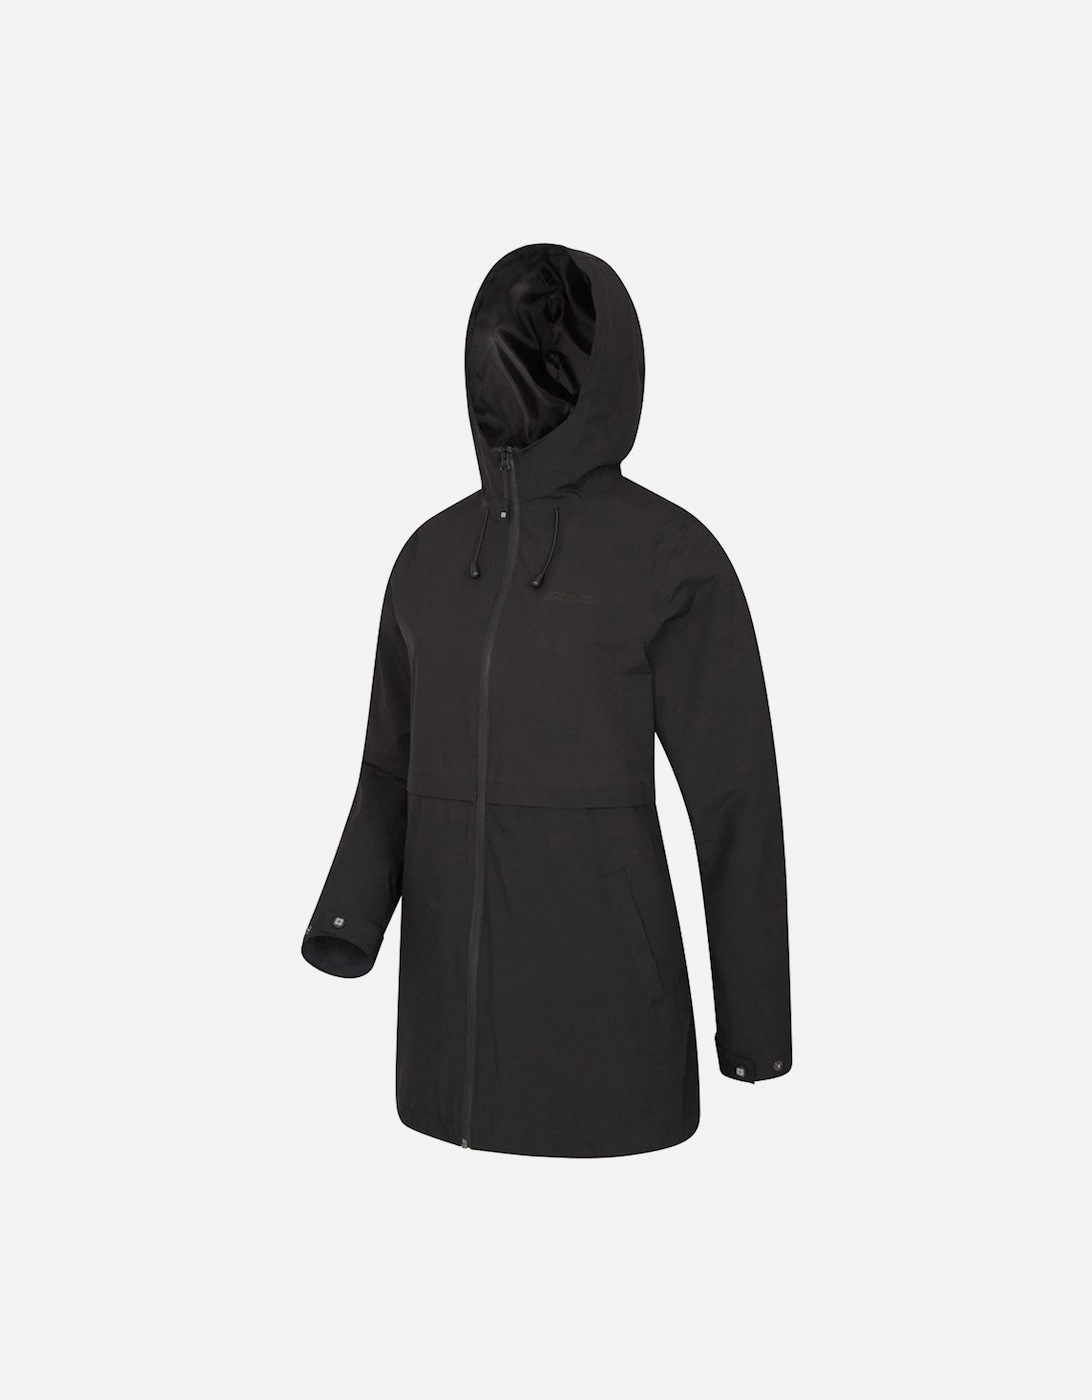 Womens/Ladies Hilltop Waterproof Jacket